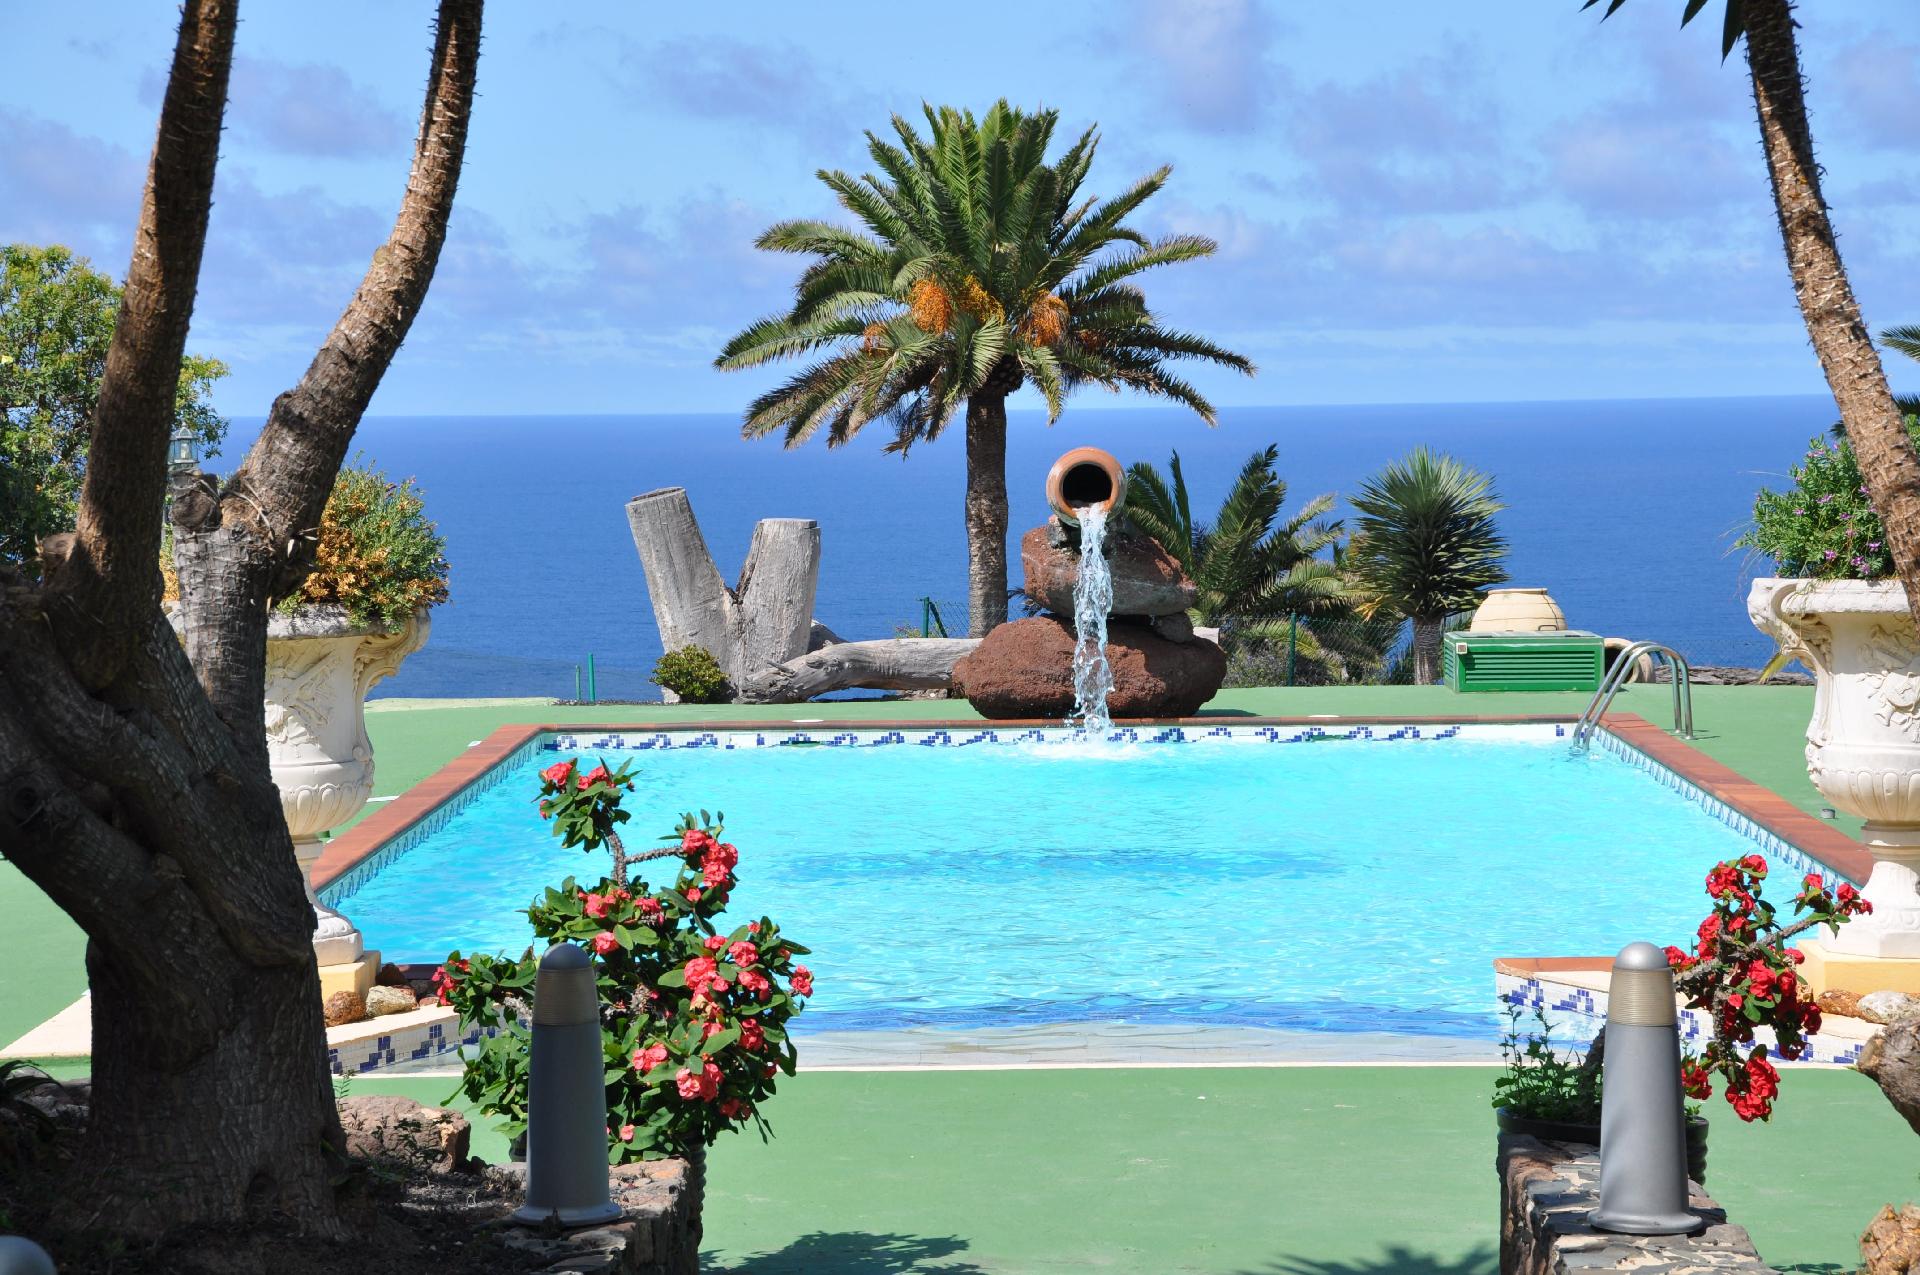 Villa im Kolonialstil mit Pool auf einer weitl&aum Ferienhaus  Kanaren